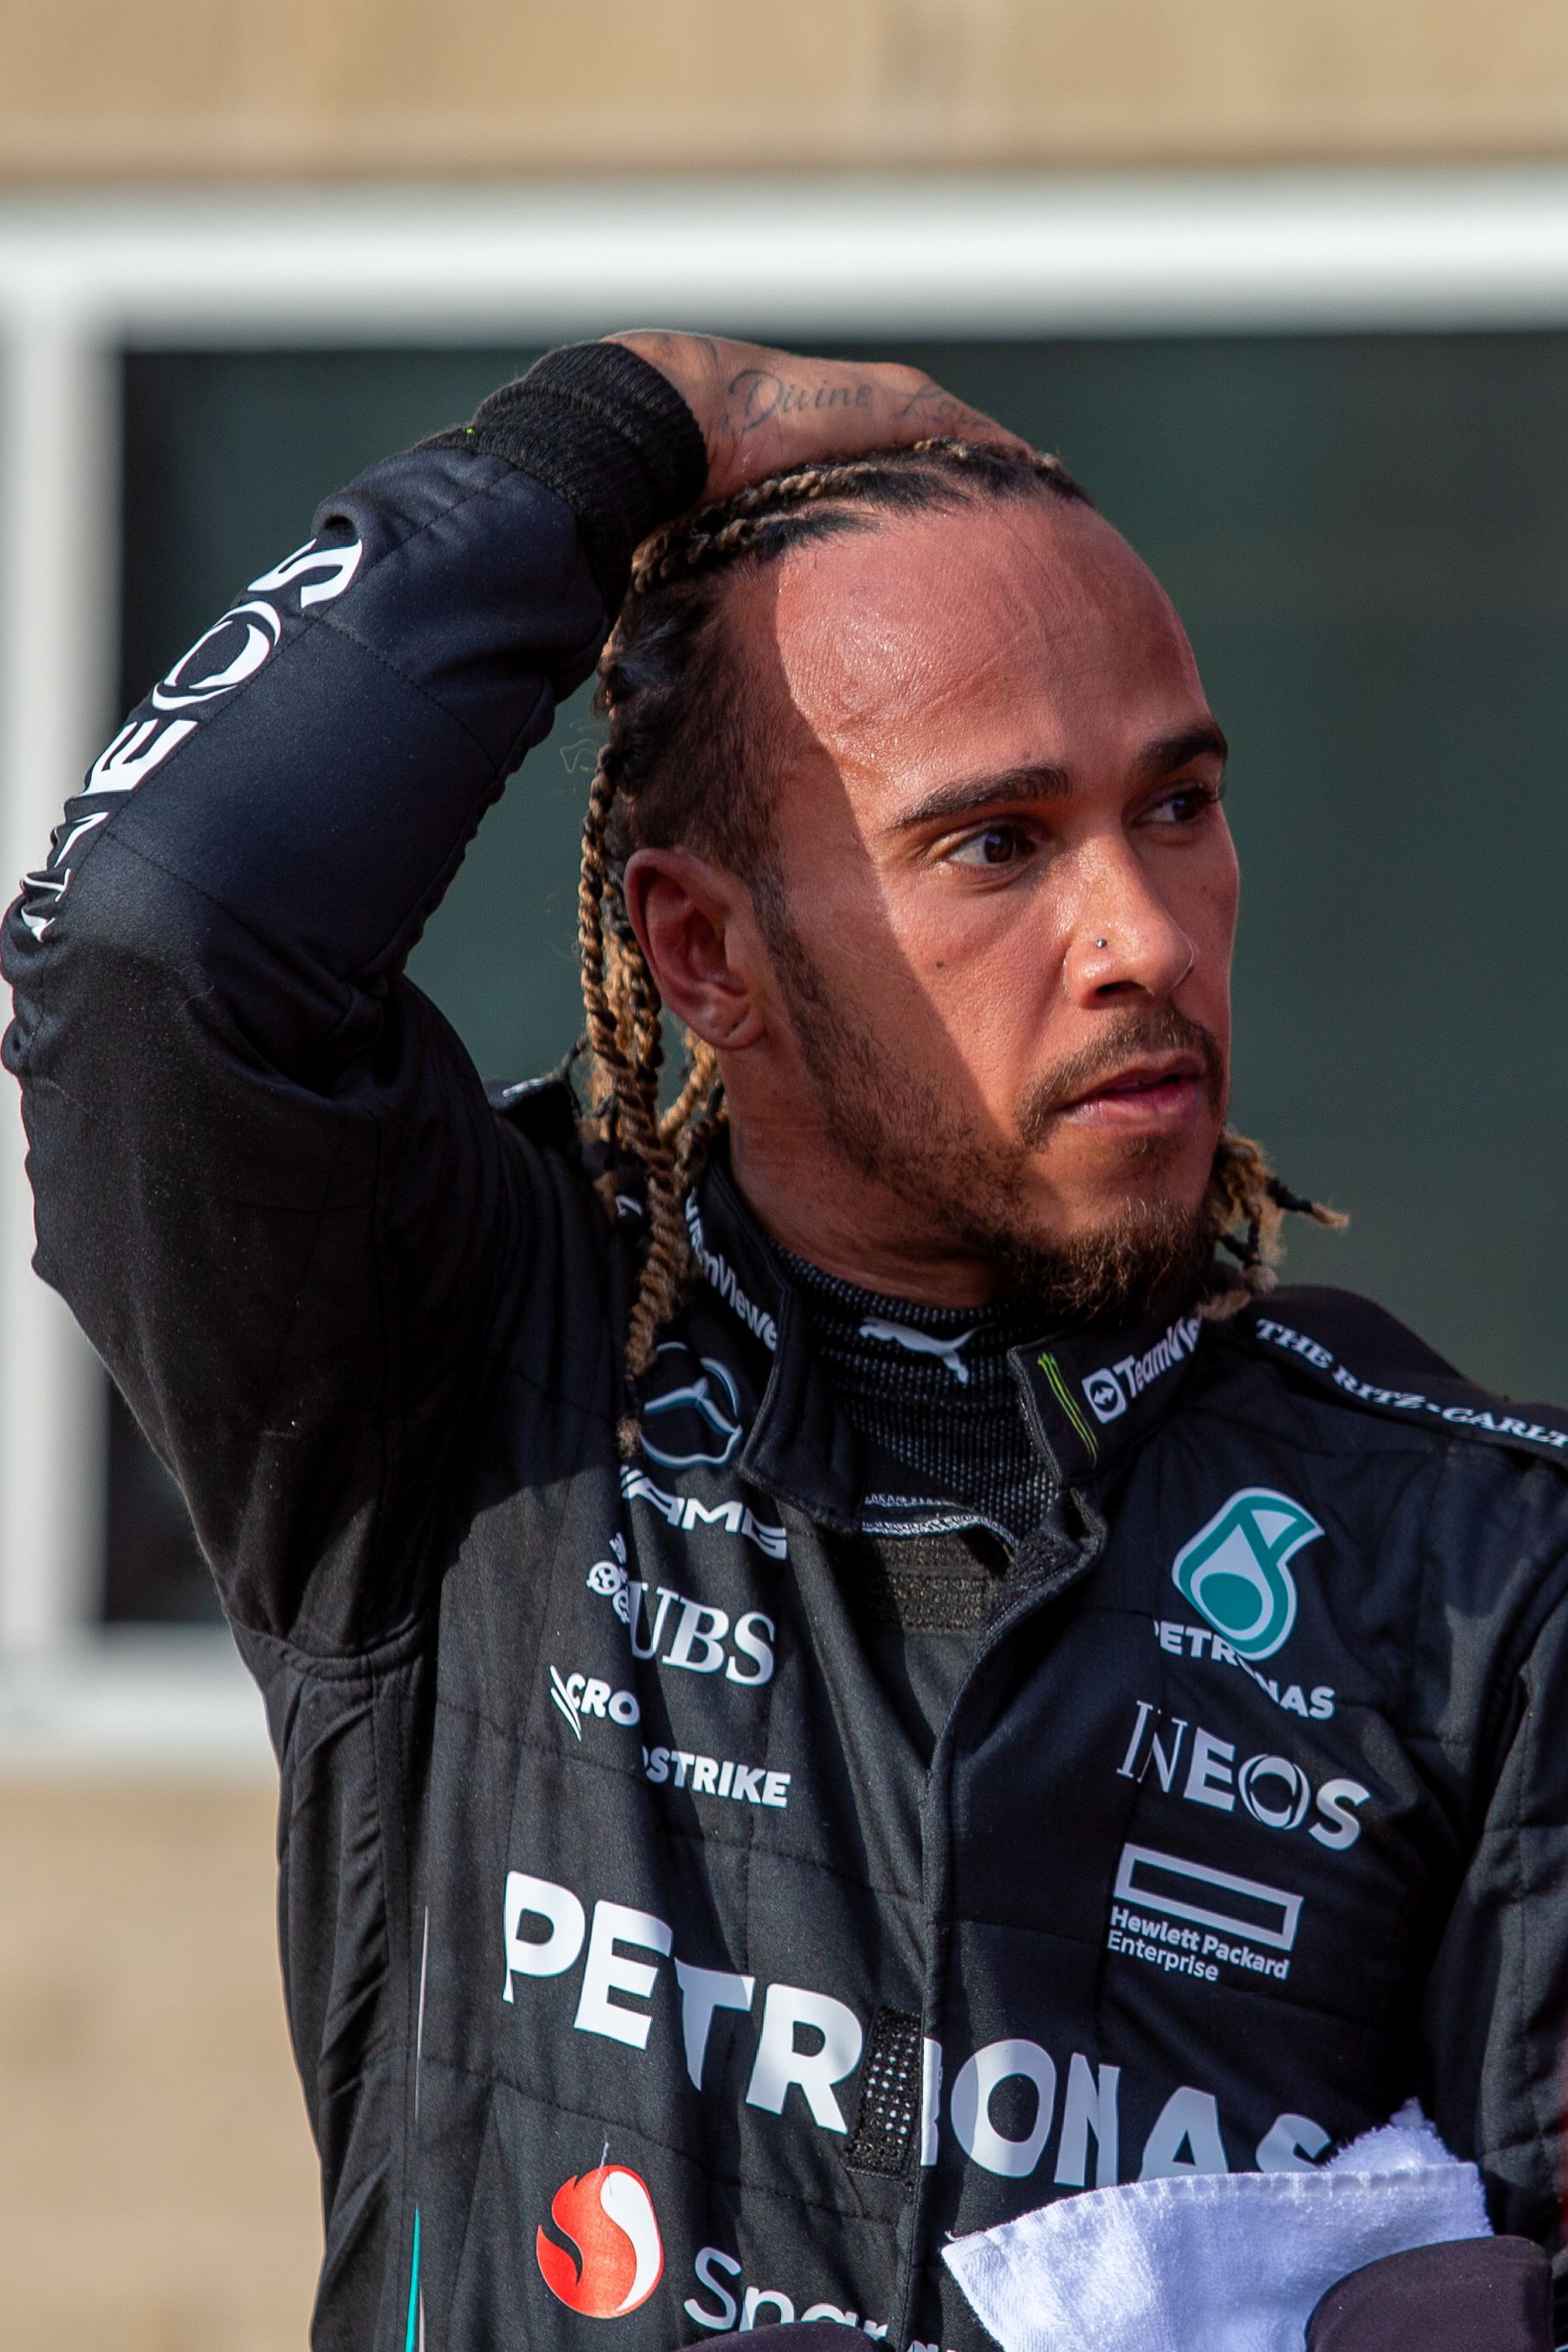 A spanyolnál négy évvel fiatalabb Lewis Hamilton régóta szenved, motivációs gondjai vannak / Fotó: Getty Images